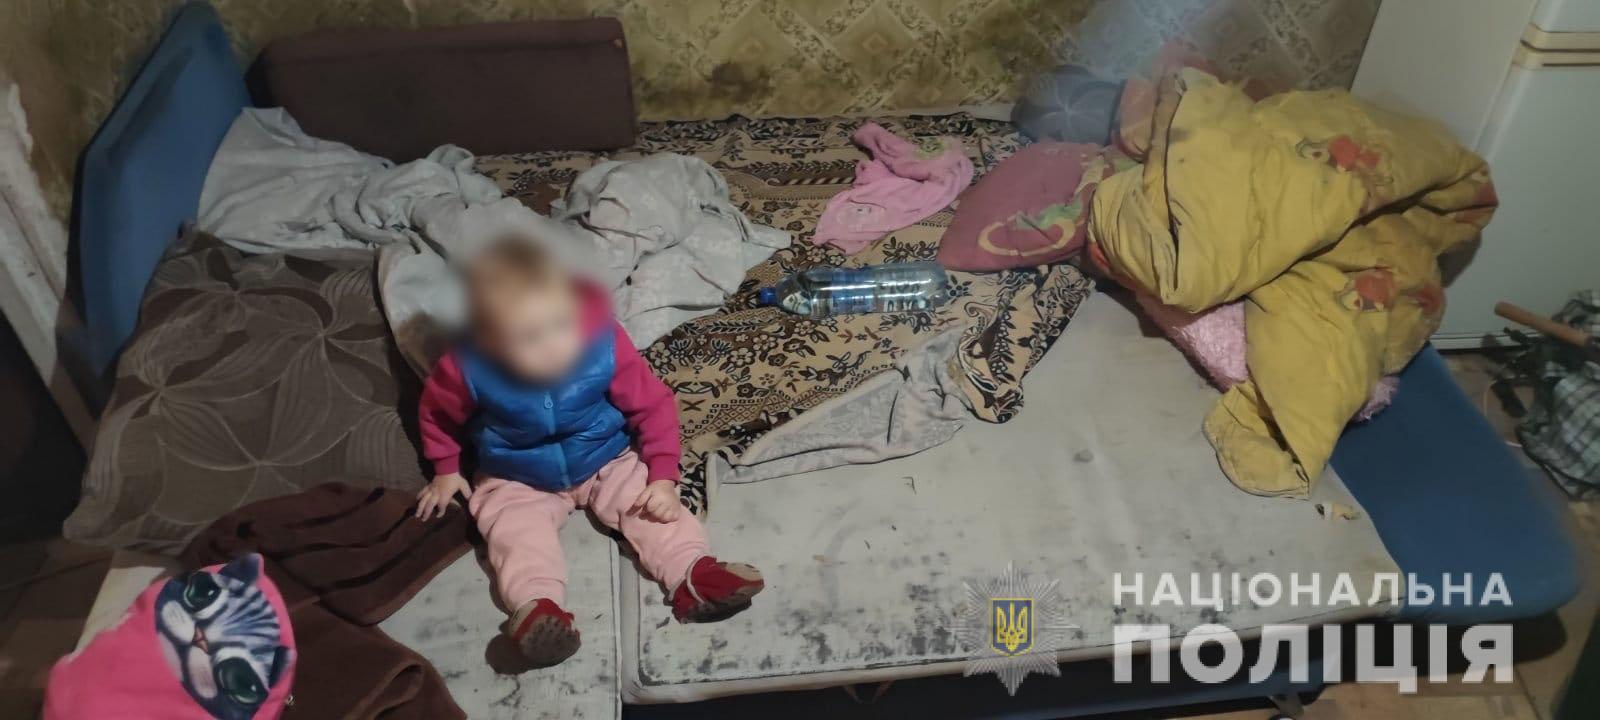 В запрещенном месте перебегала дорогу и упала на тротуаре: в Харькове у горе-матери забрали ребенка